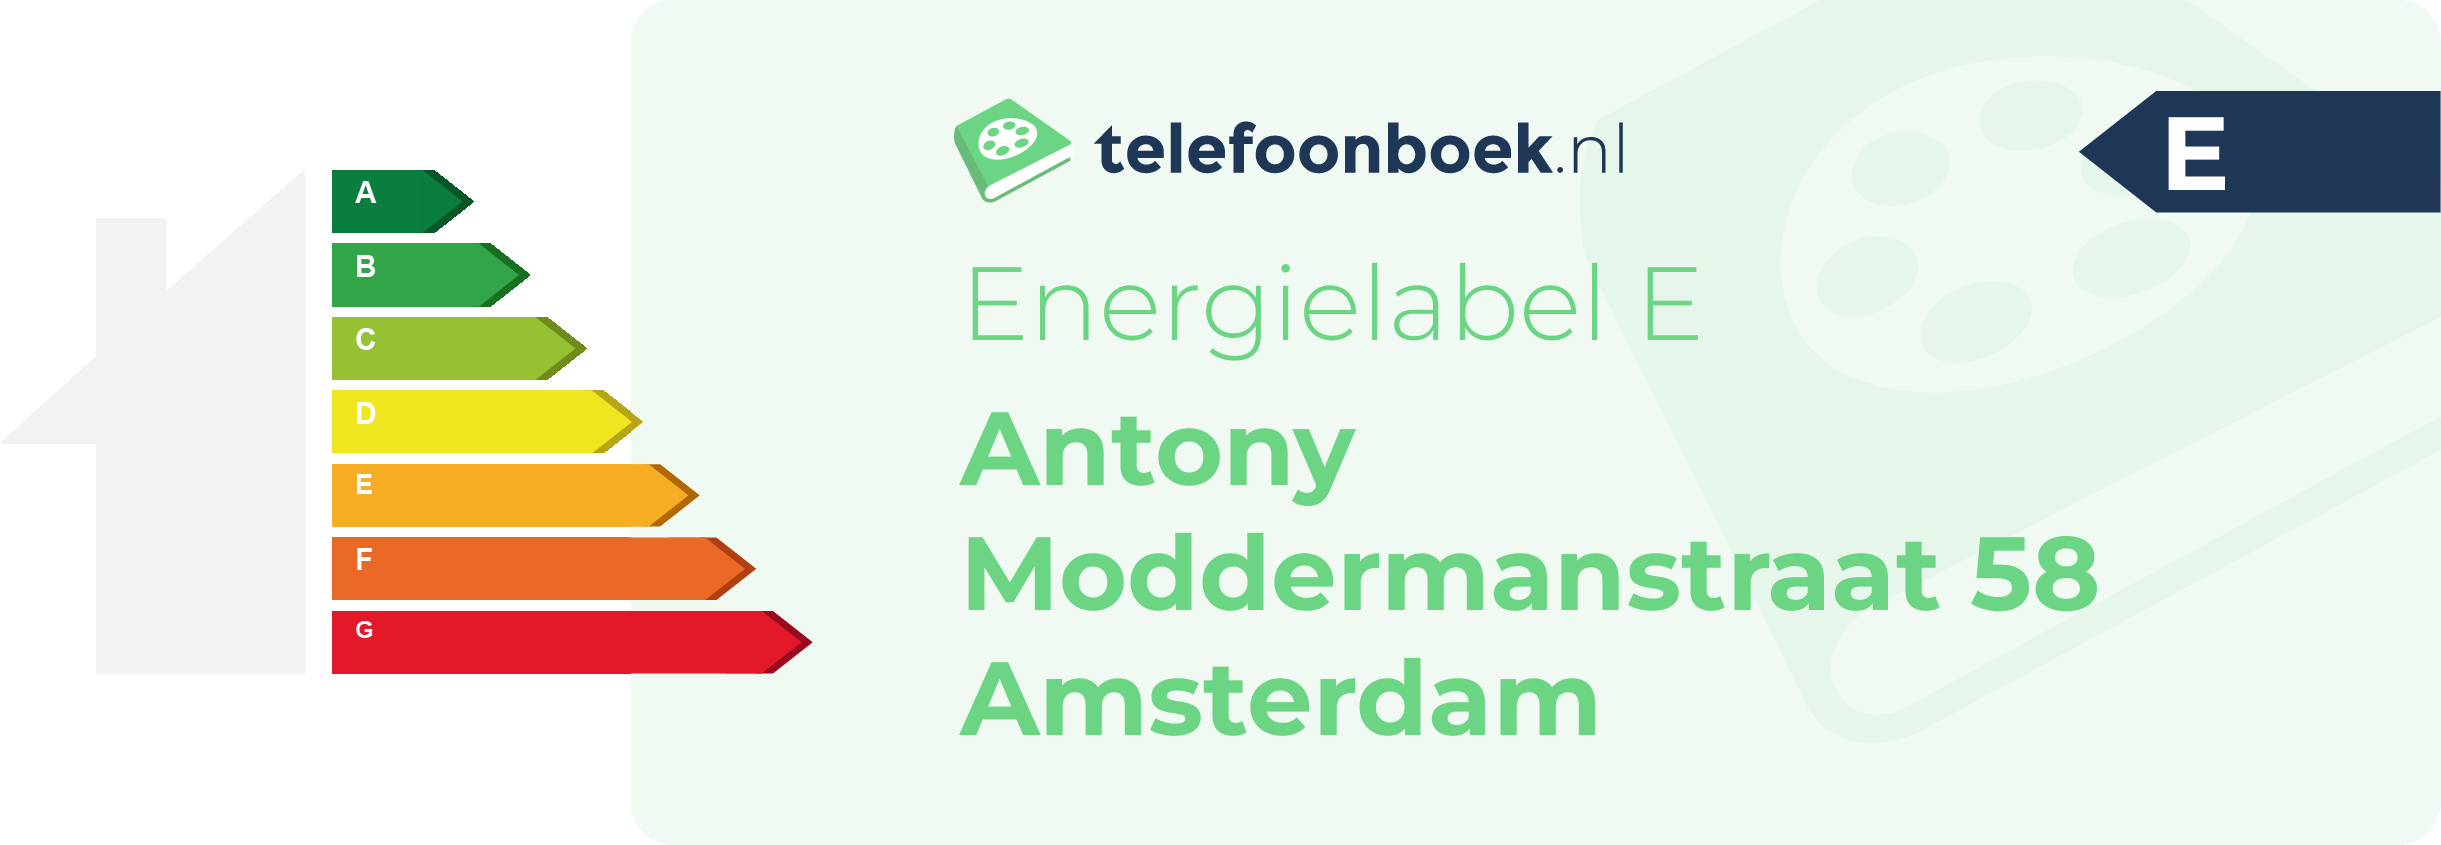 Energielabel Antony Moddermanstraat 58 Amsterdam